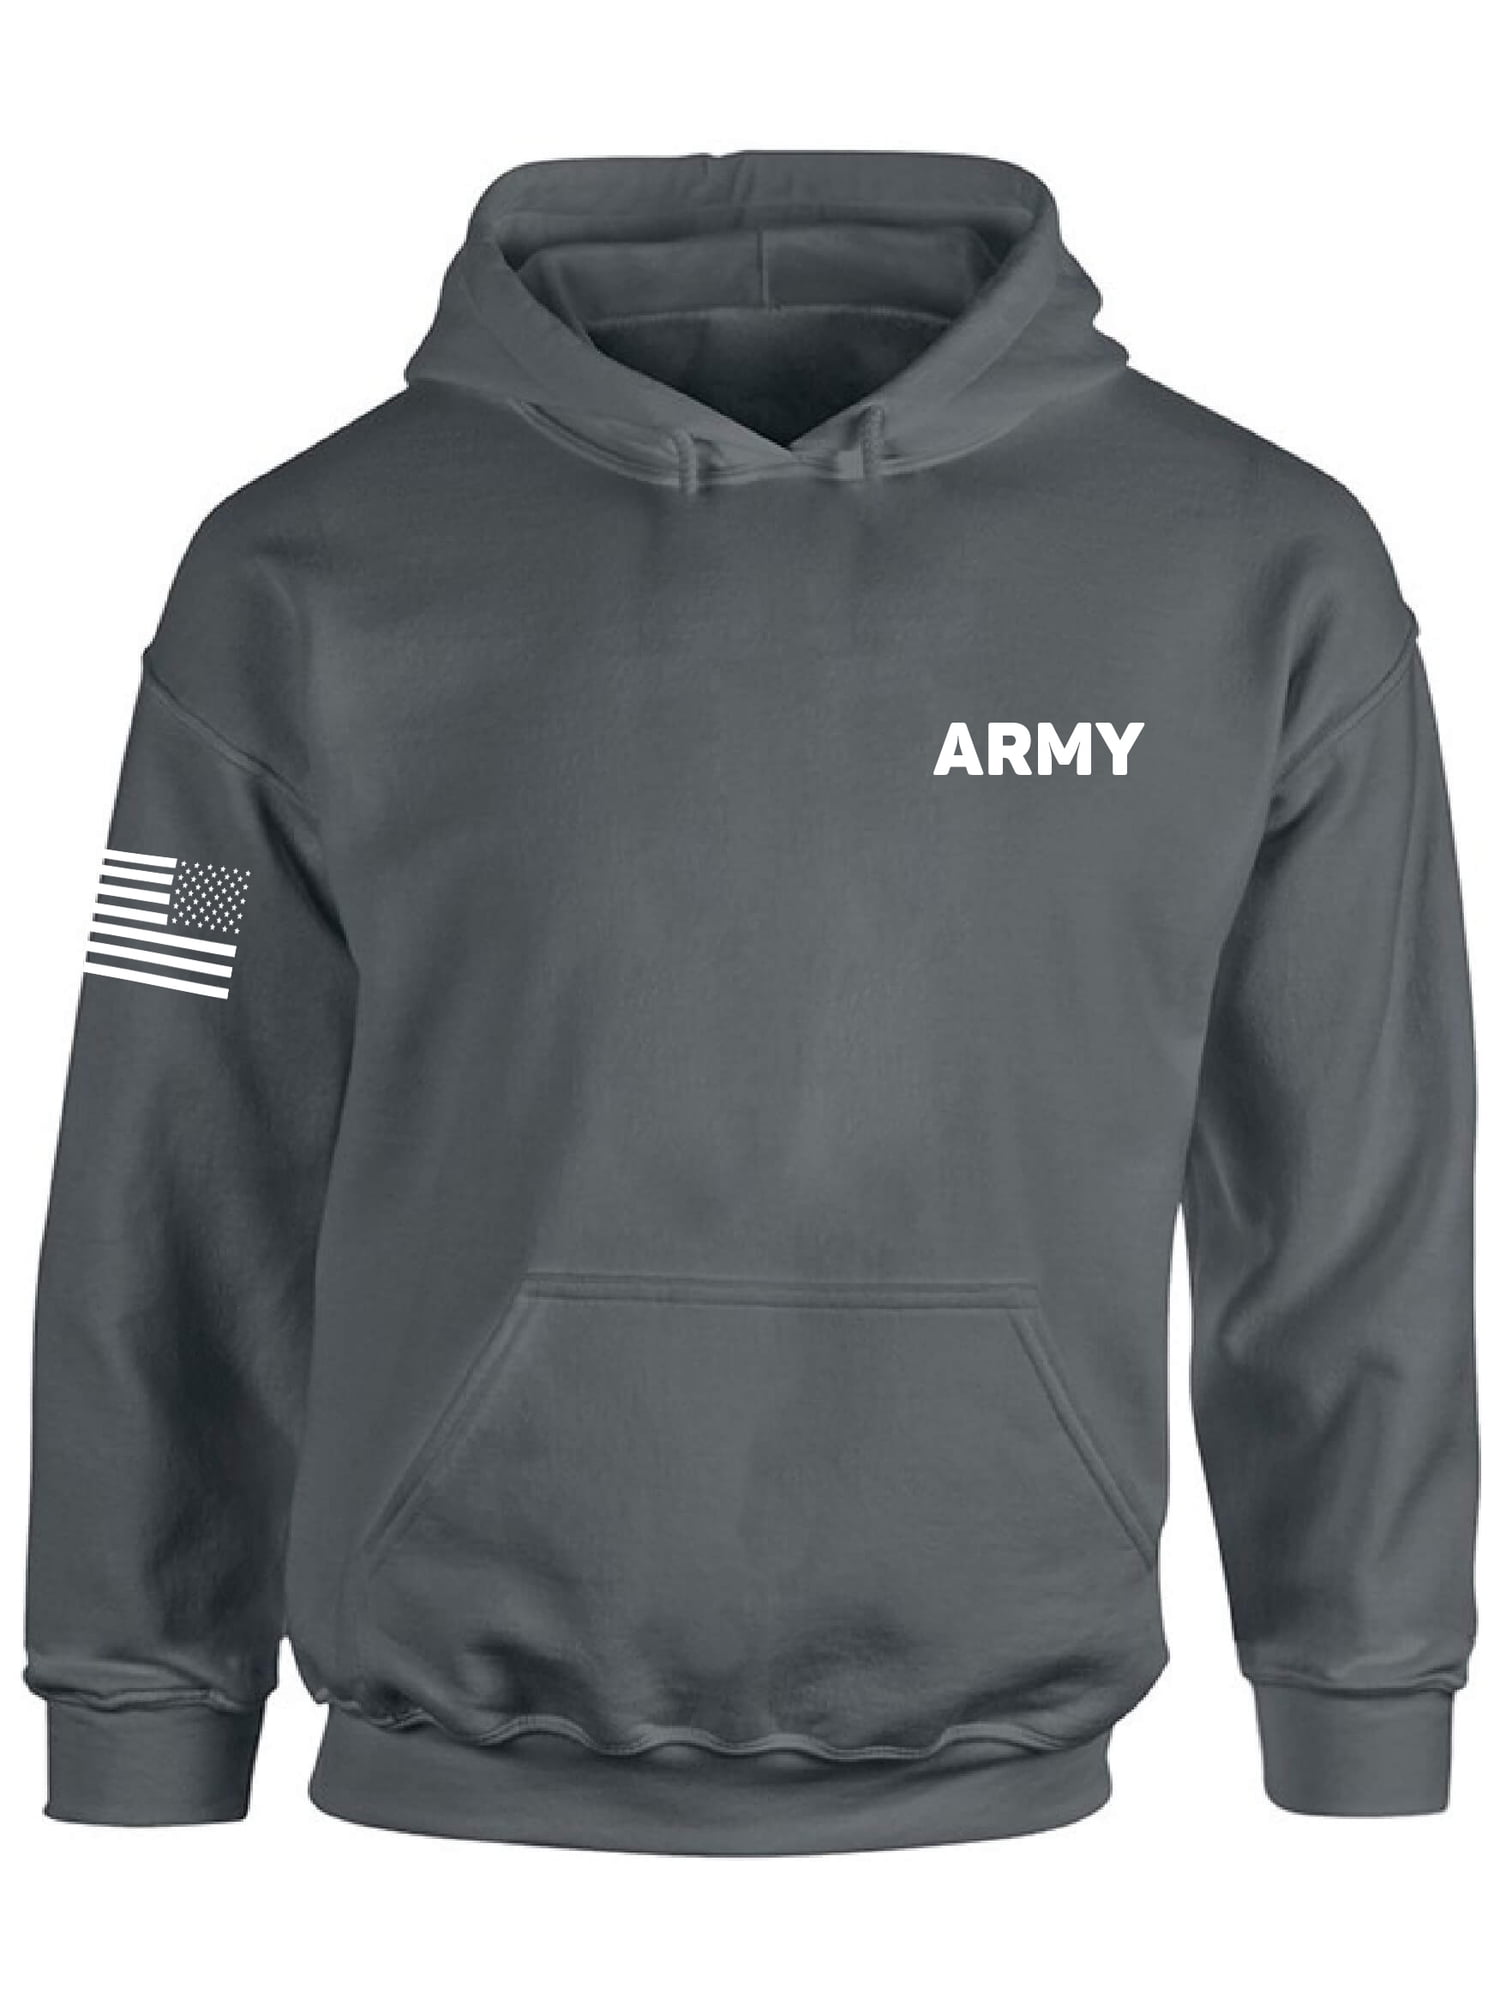 Awkward Styles American Flag Army Hoodie Vintage USA Army Men Women Hooded Sweatshirt